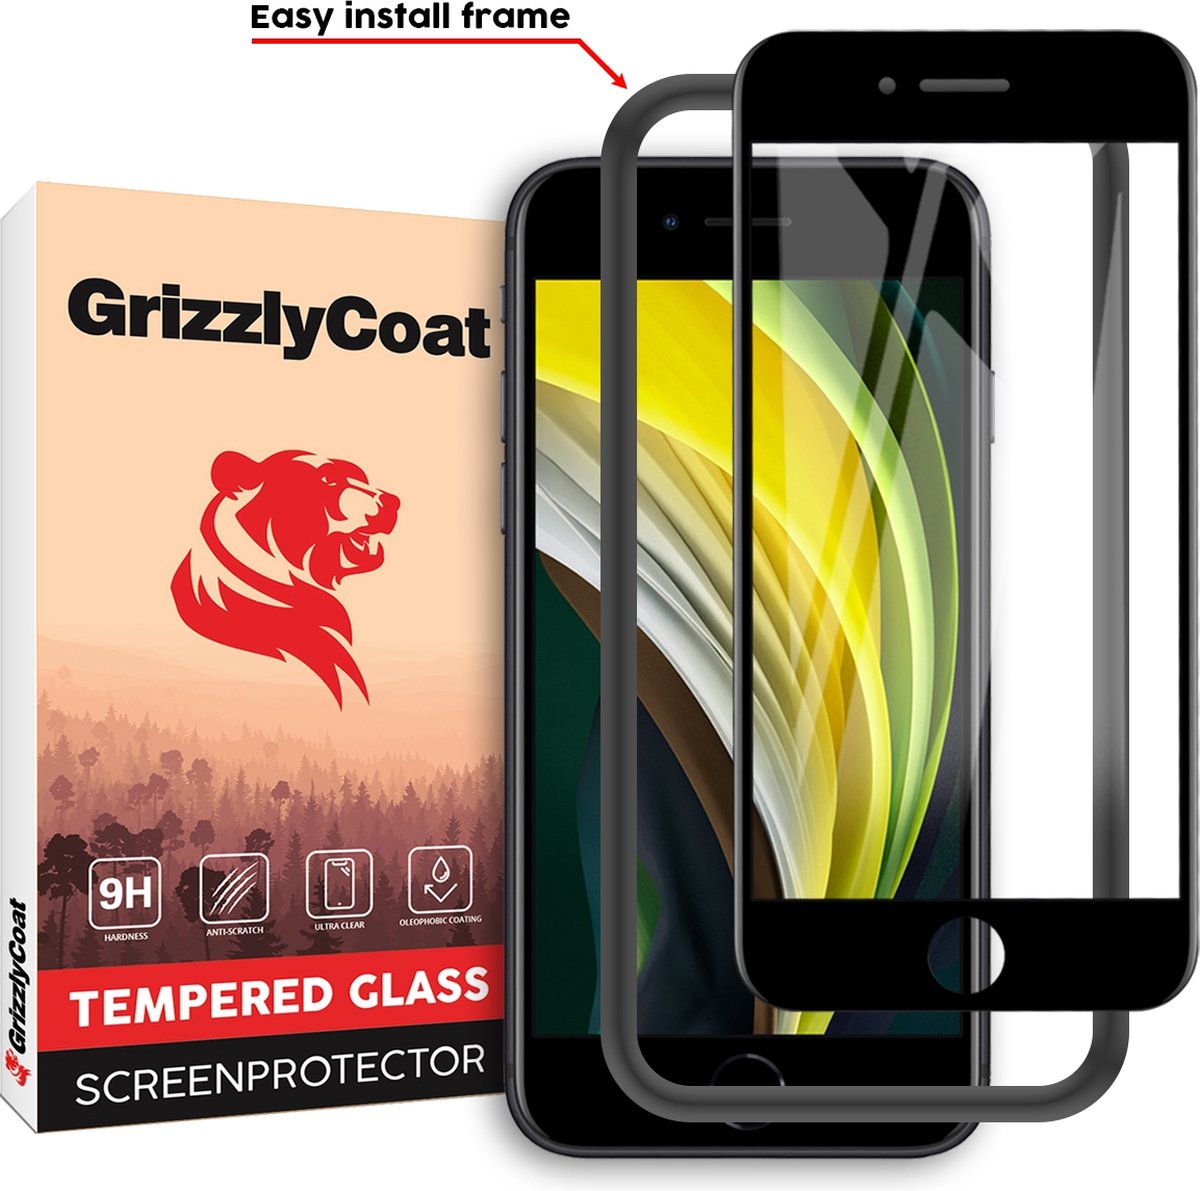 GrizzlyCoat - Screenprotector geschikt voor Apple iPhone 6s Glazen | GrizzlyCoat Easy Fit Screenprotector - Case Friendly + Installatie Frame - Zwart